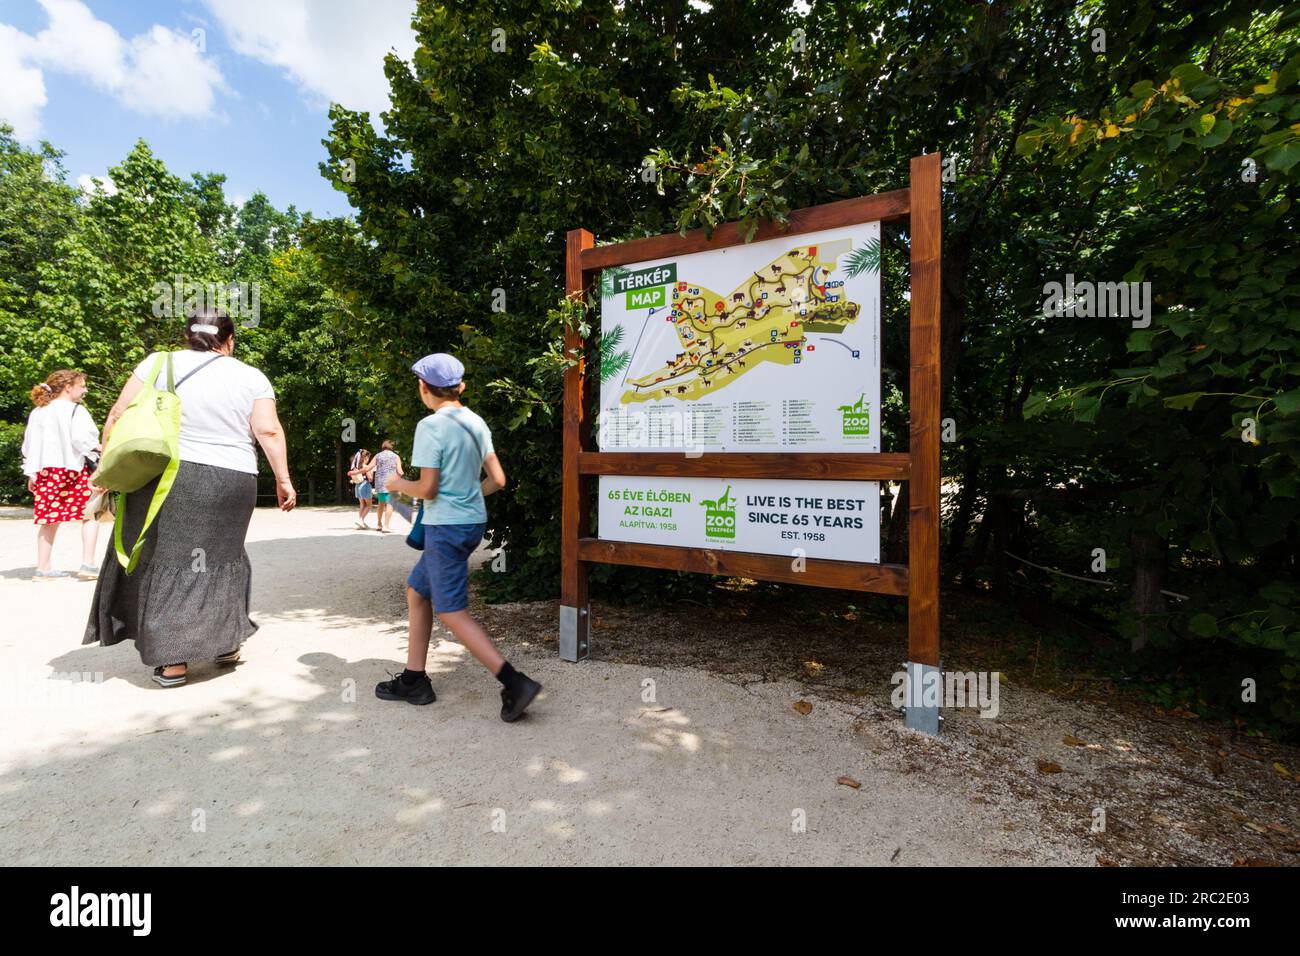 Map of Veszprem Zoo on wooden sign with visitors, Veszprem, Hungary Stock Photo